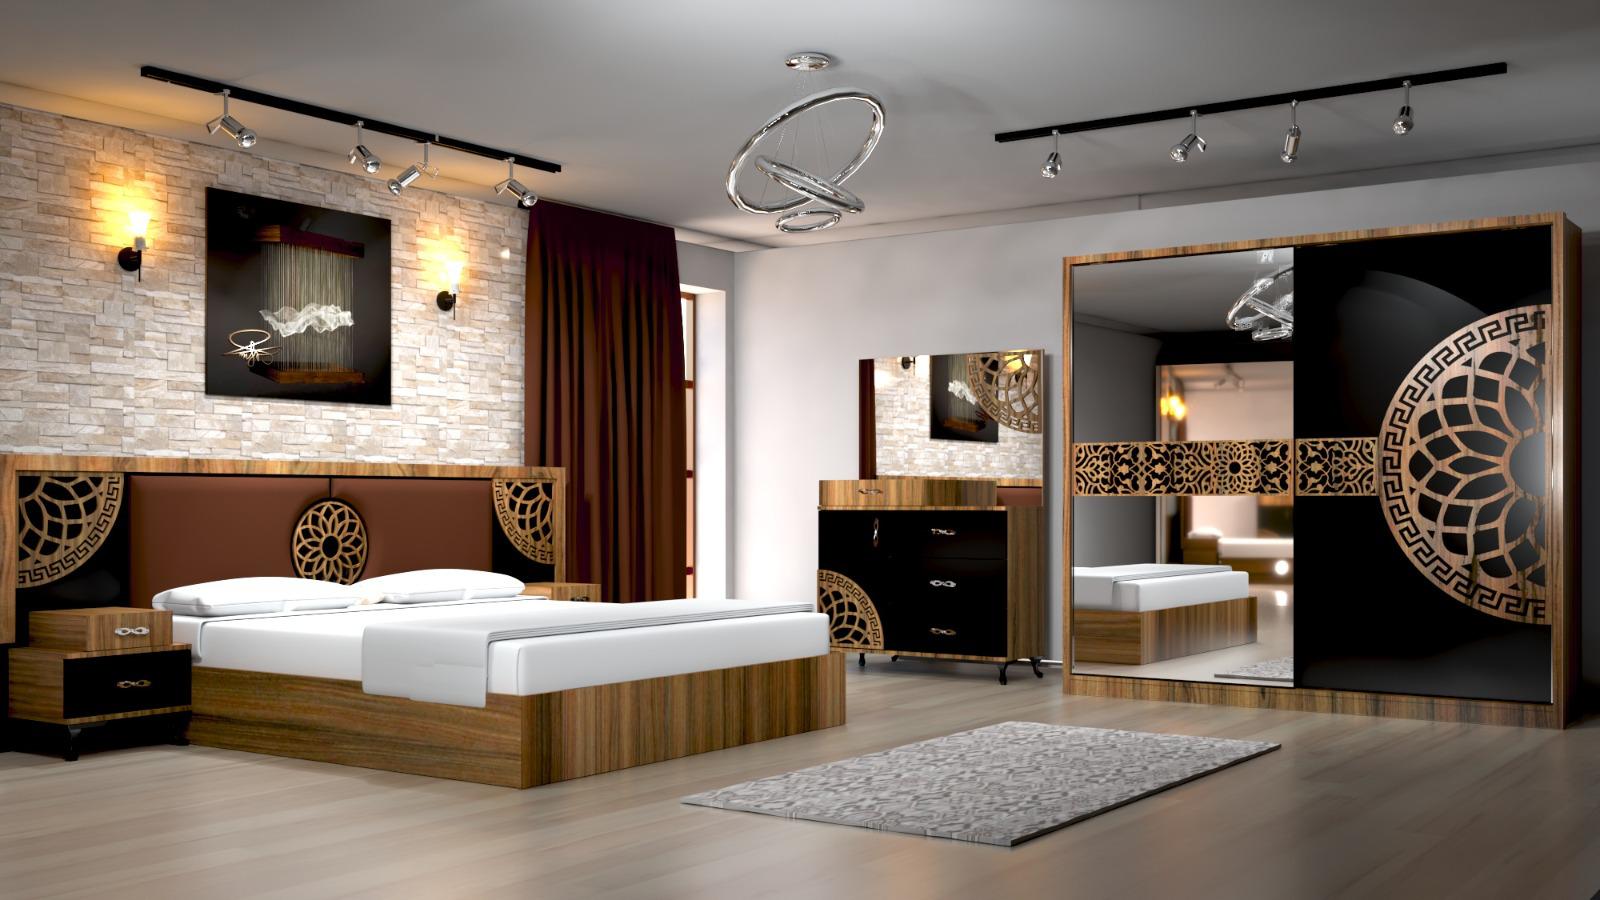 Chambres à coucher Turque Des chambres a coucher modèles Turque disponibles en plusieurs qualités.
Les prix varient en fonction des modèles.
Livraison + montage gratuit dans la ville de Dakar.
Veuillez nous contacter pour plus d